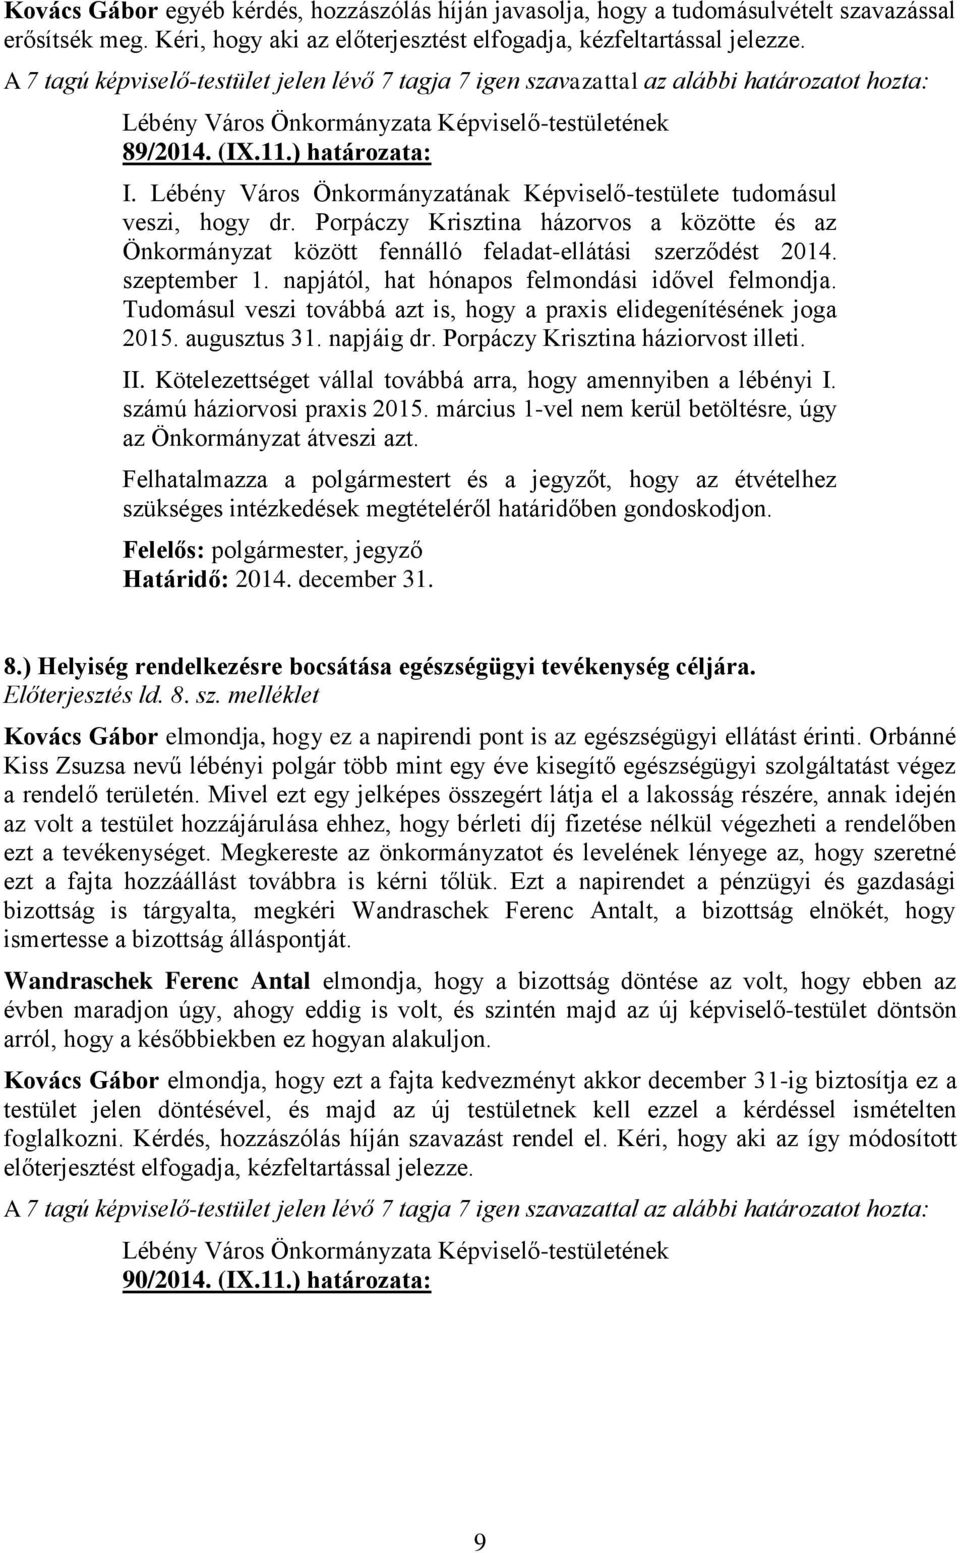 Lébény Város Önkormányzatának Képviselő-testülete tudomásul veszi, hogy dr. Porpáczy Krisztina házorvos a közötte és az Önkormányzat között fennálló feladat-ellátási szerződést 2014. szeptember 1.